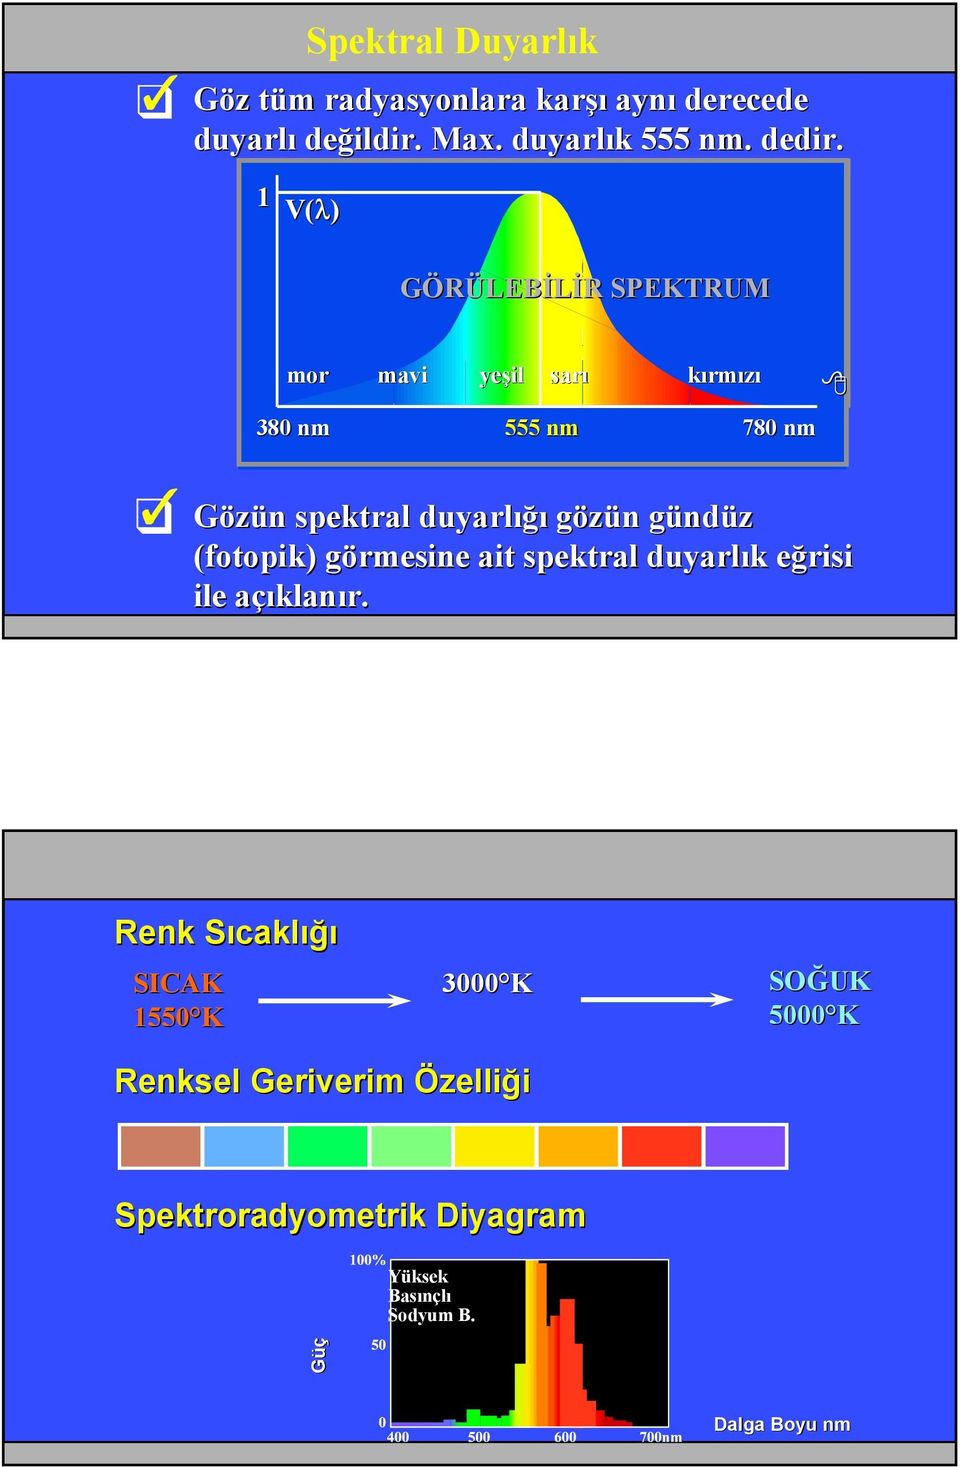 nm 555 nm 780 nm Gözün n spektral duyarlığı gözün n gündg ndüz (fotopik) görmesine g ait spektral duyarlık k eğrisi e ile açıklana